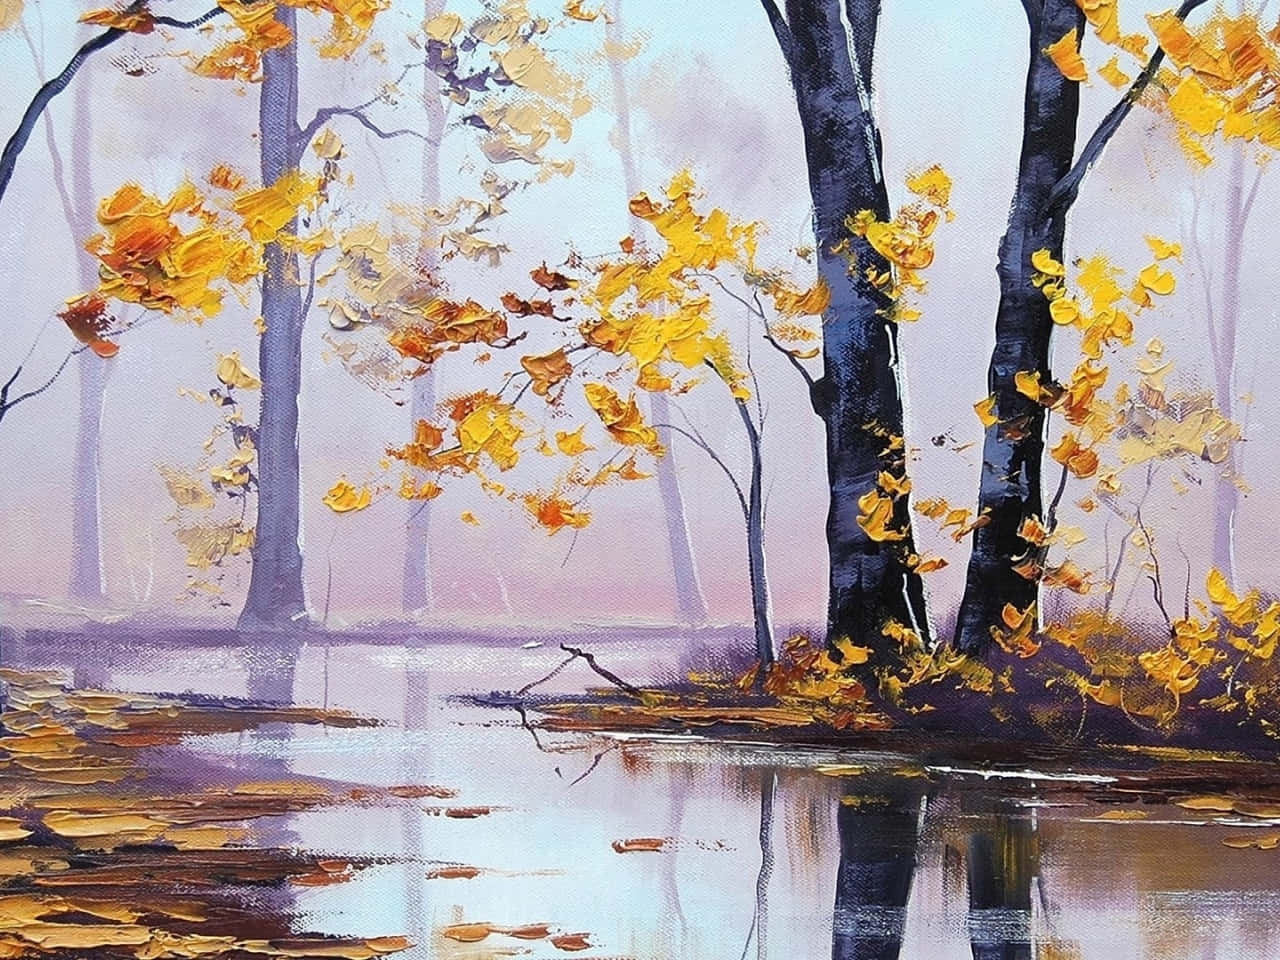 Et smukt olie maleri af en solopgang over en sø. Wallpaper